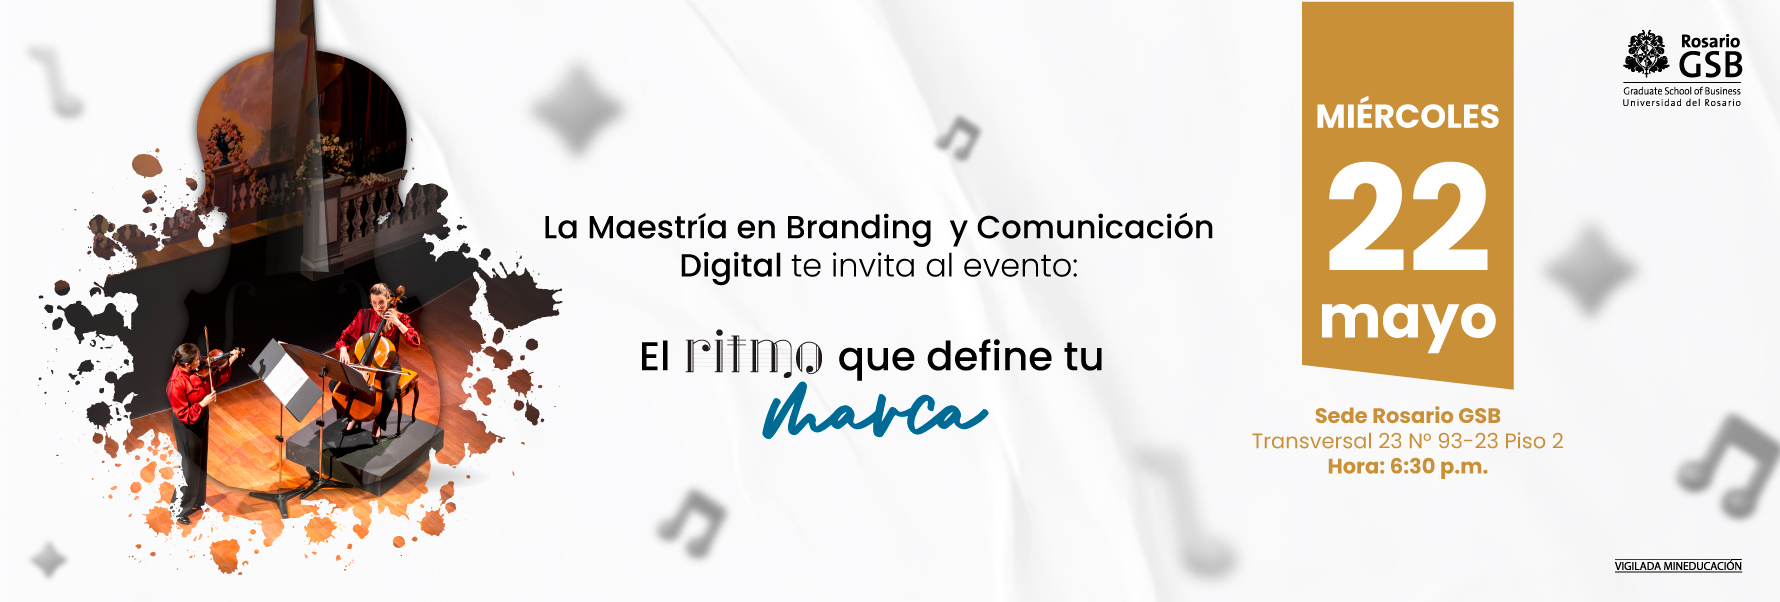 Lanzamiento Maestría en Branding y Comunicación Digital